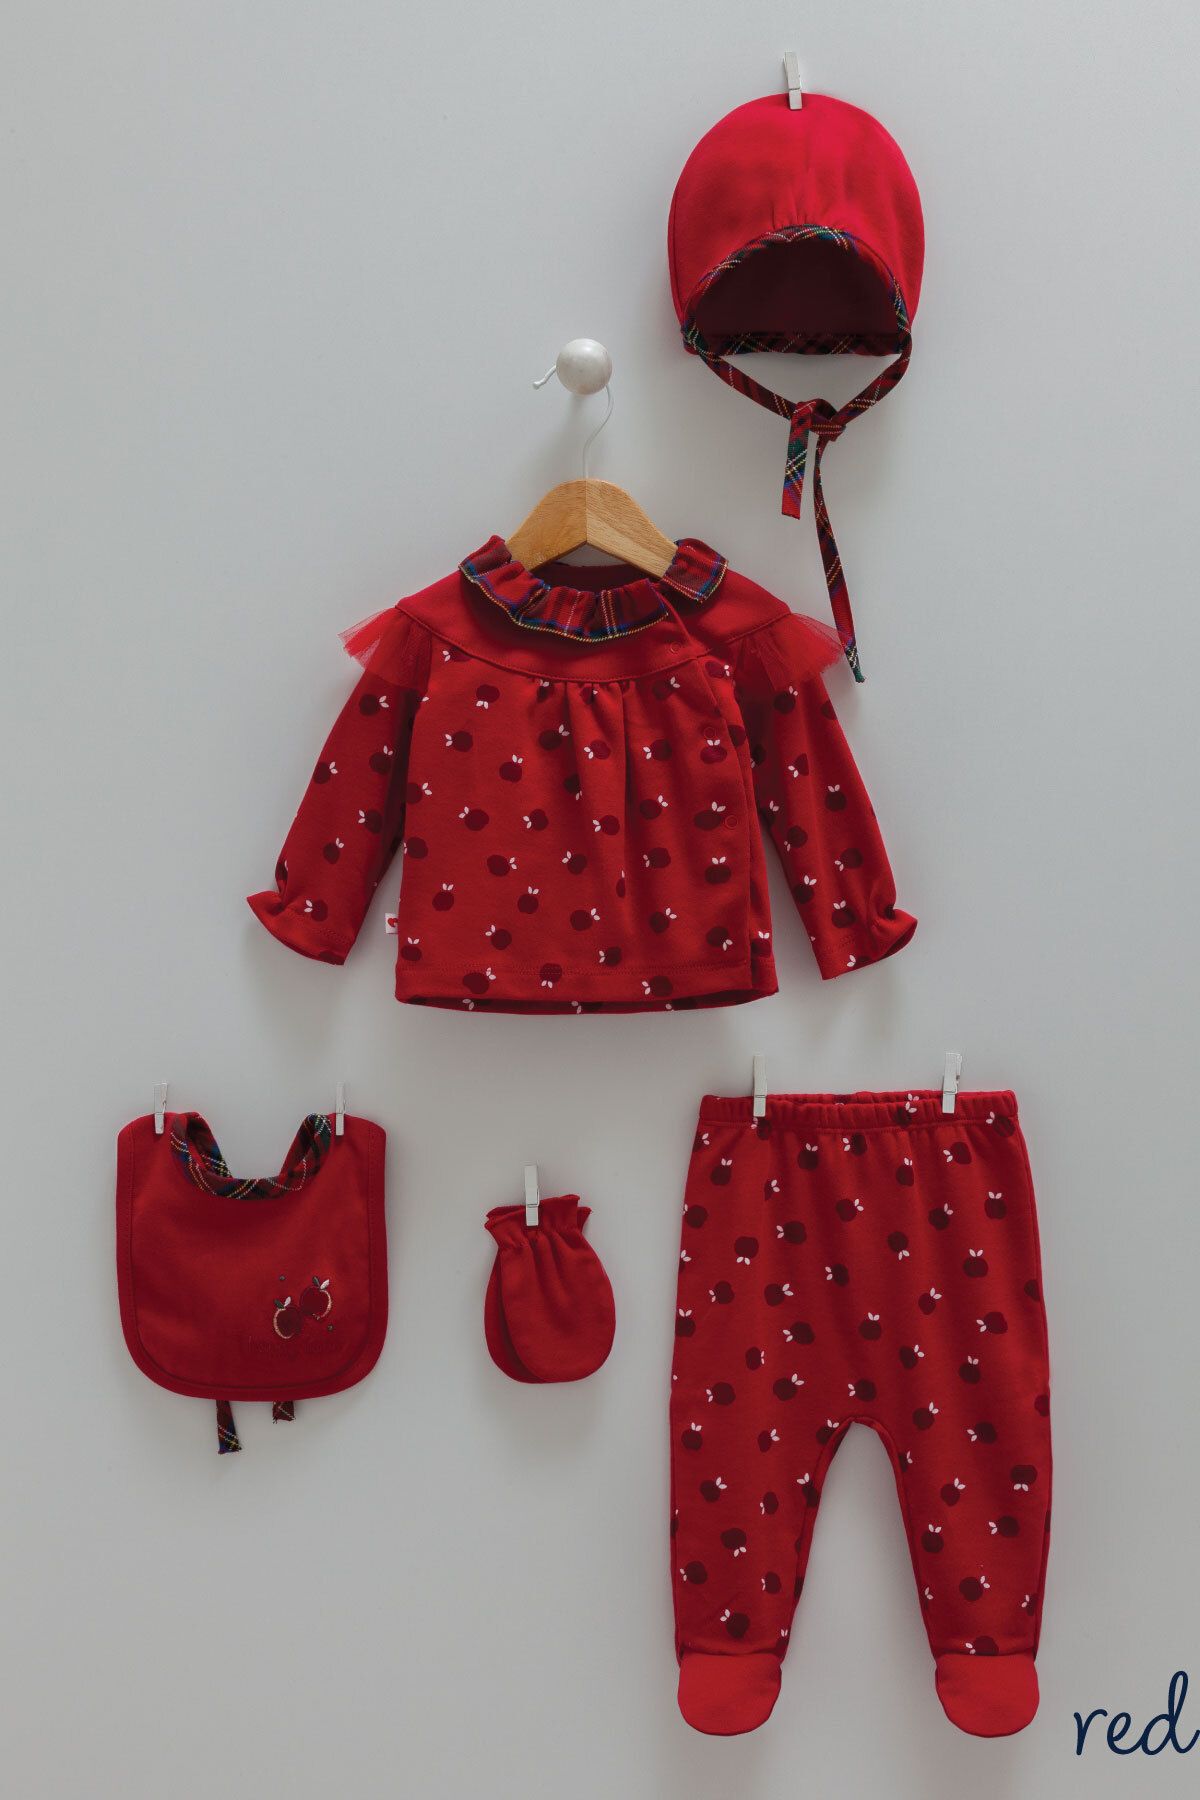 Caramell Bebek Hastane Çıkış Seti Yılbaşı Temalı Kırmızı Yeni Doğan Kız Bebek Giyim 5'li Set